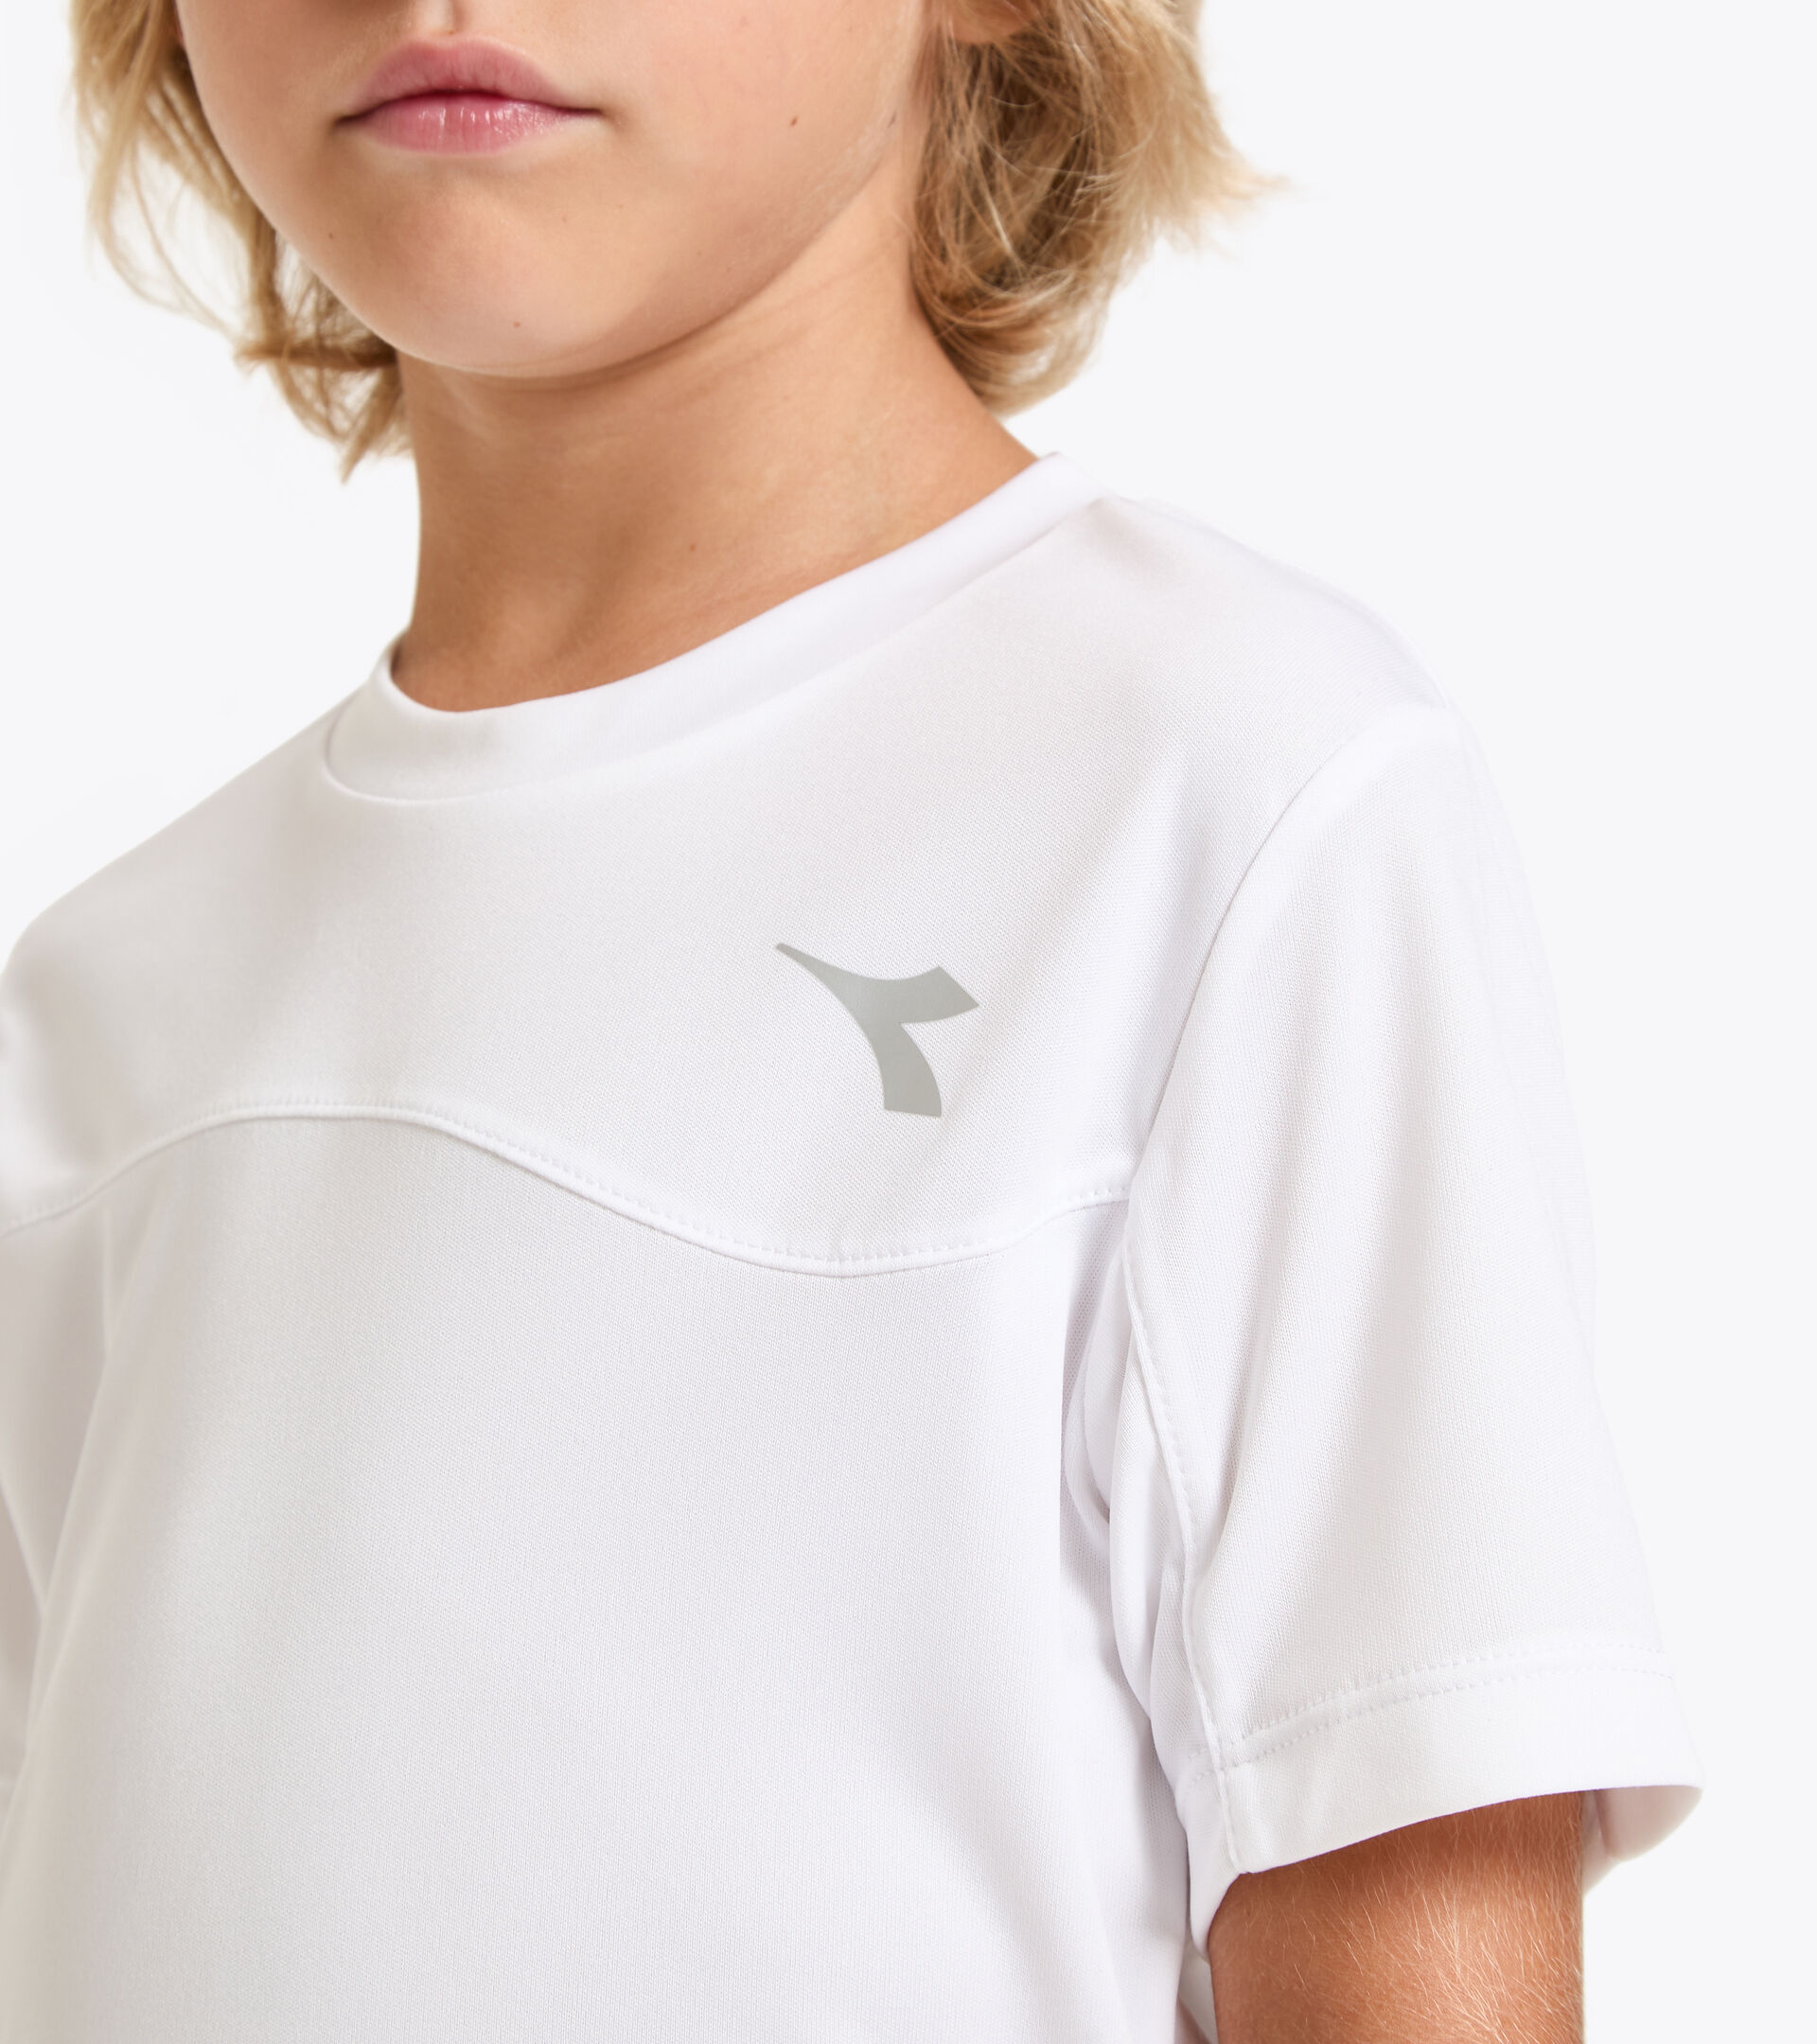 Camiseta de tenis - Junior J. T-SHIRT TEAM BLANCO VIVO - Diadora